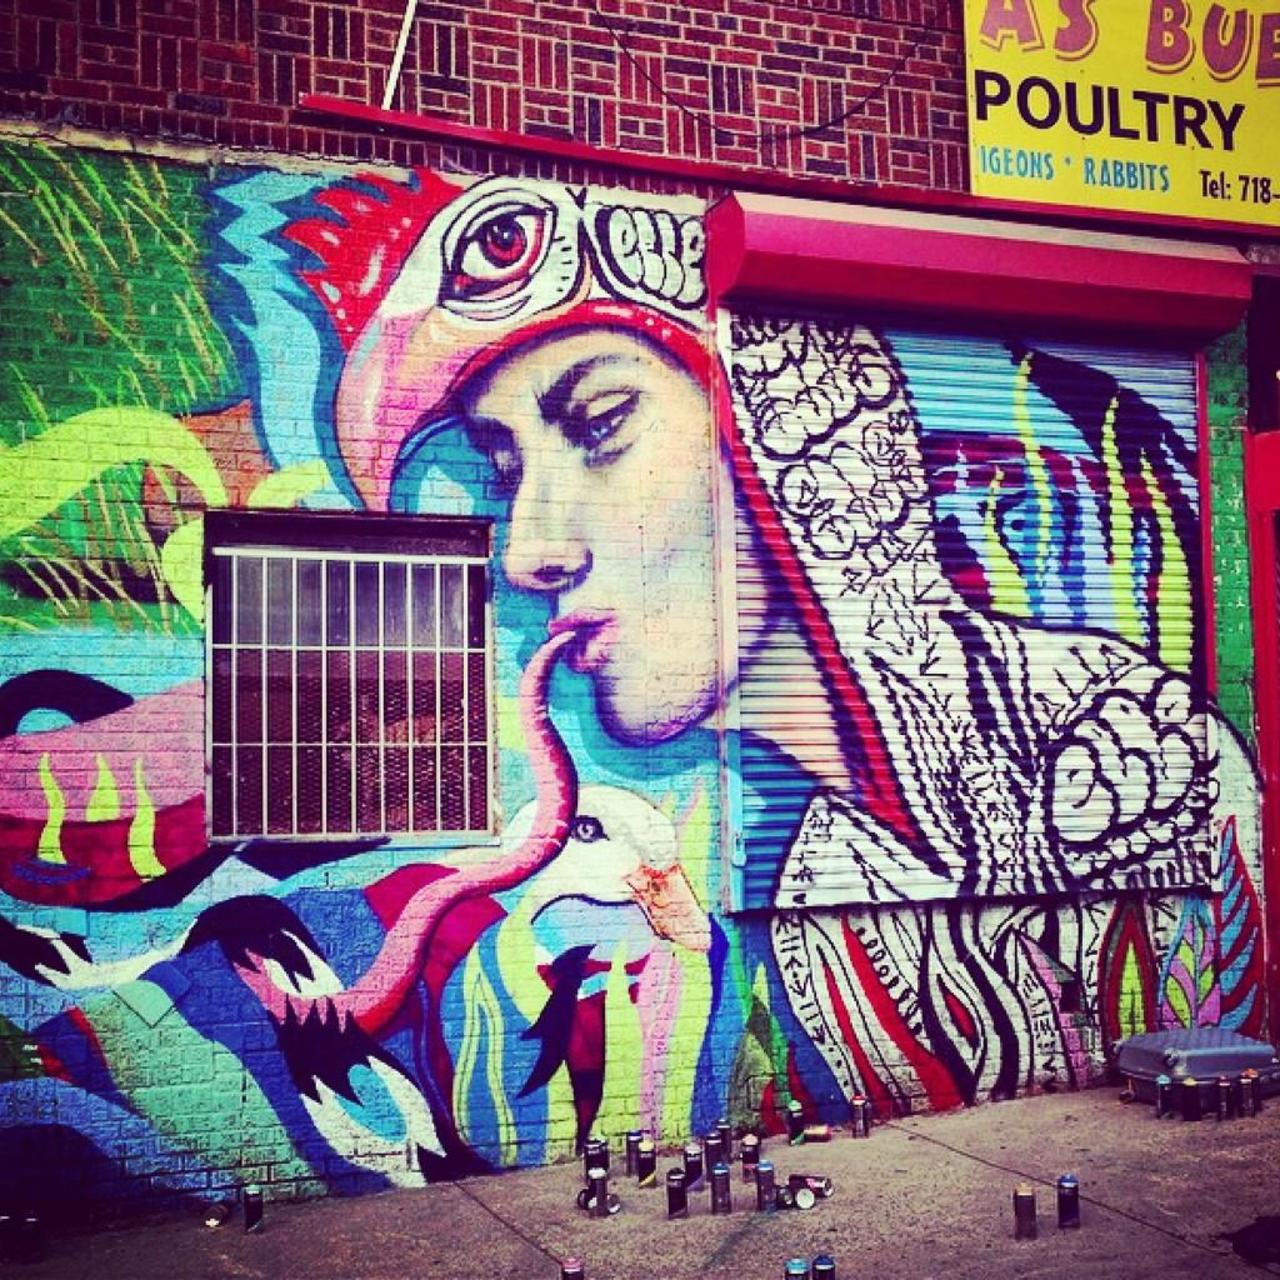 Elle #graffiti #graffitiart #urbanart #muralart #mural #murales http://t.co/j7caPD3JbR